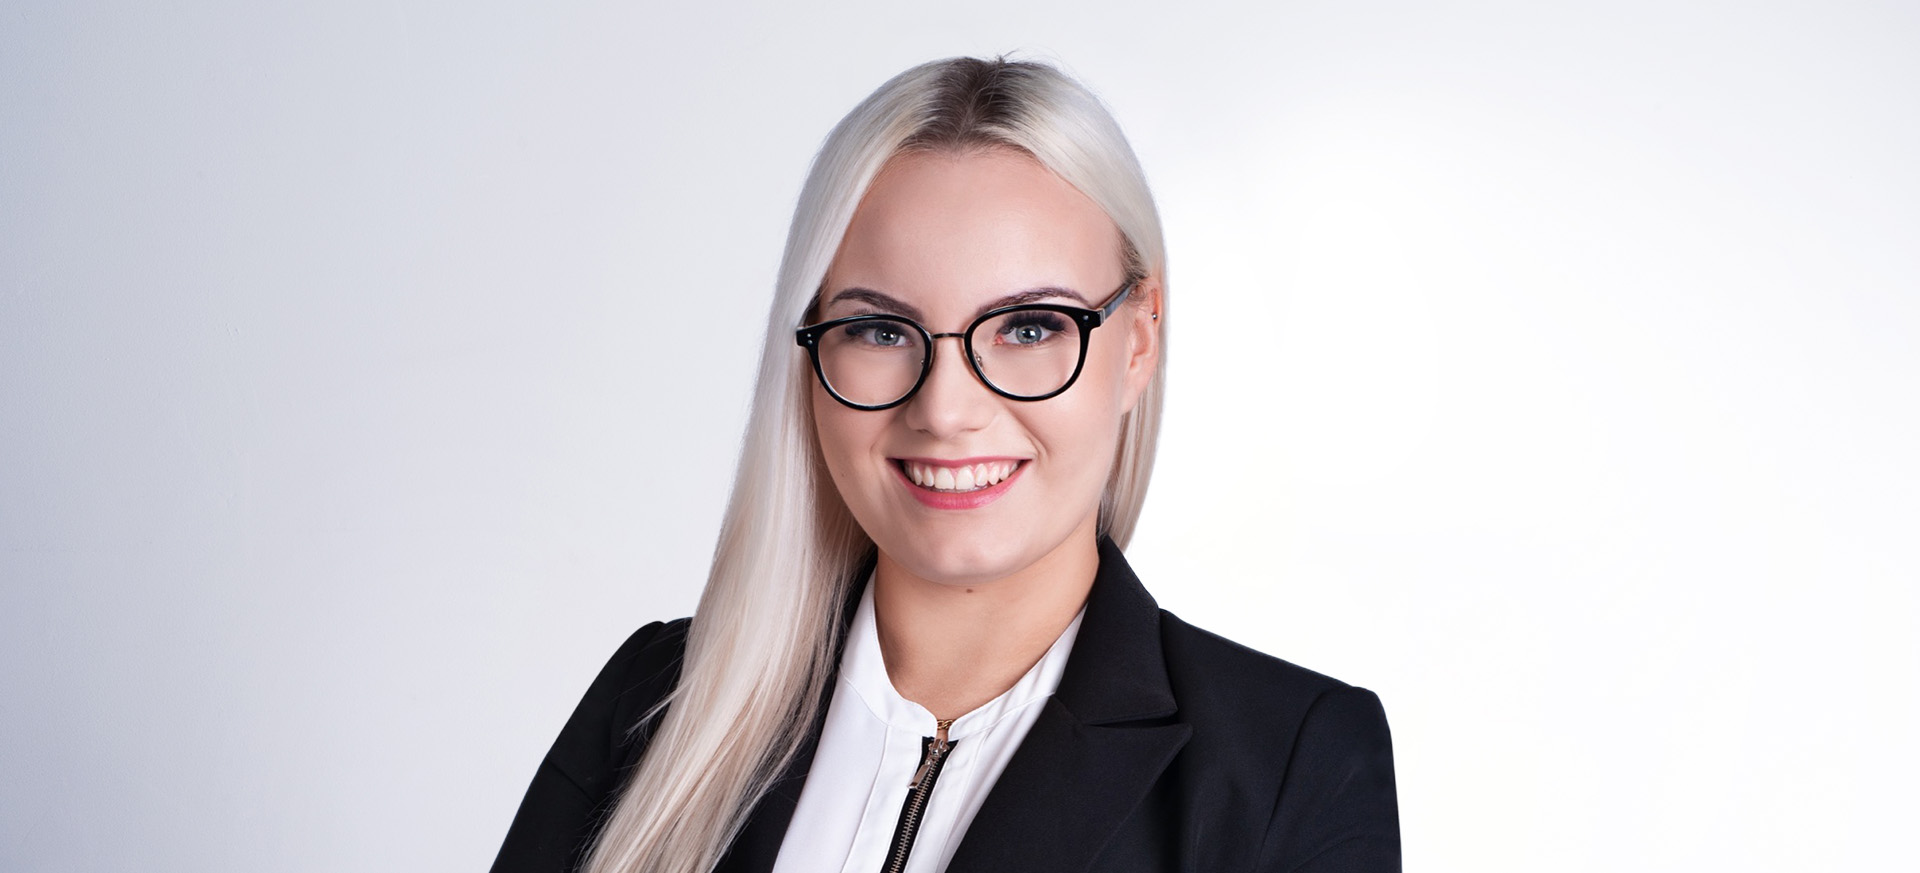 Specjalista ds. finansowych i administracji Natalia Kamińska - bio